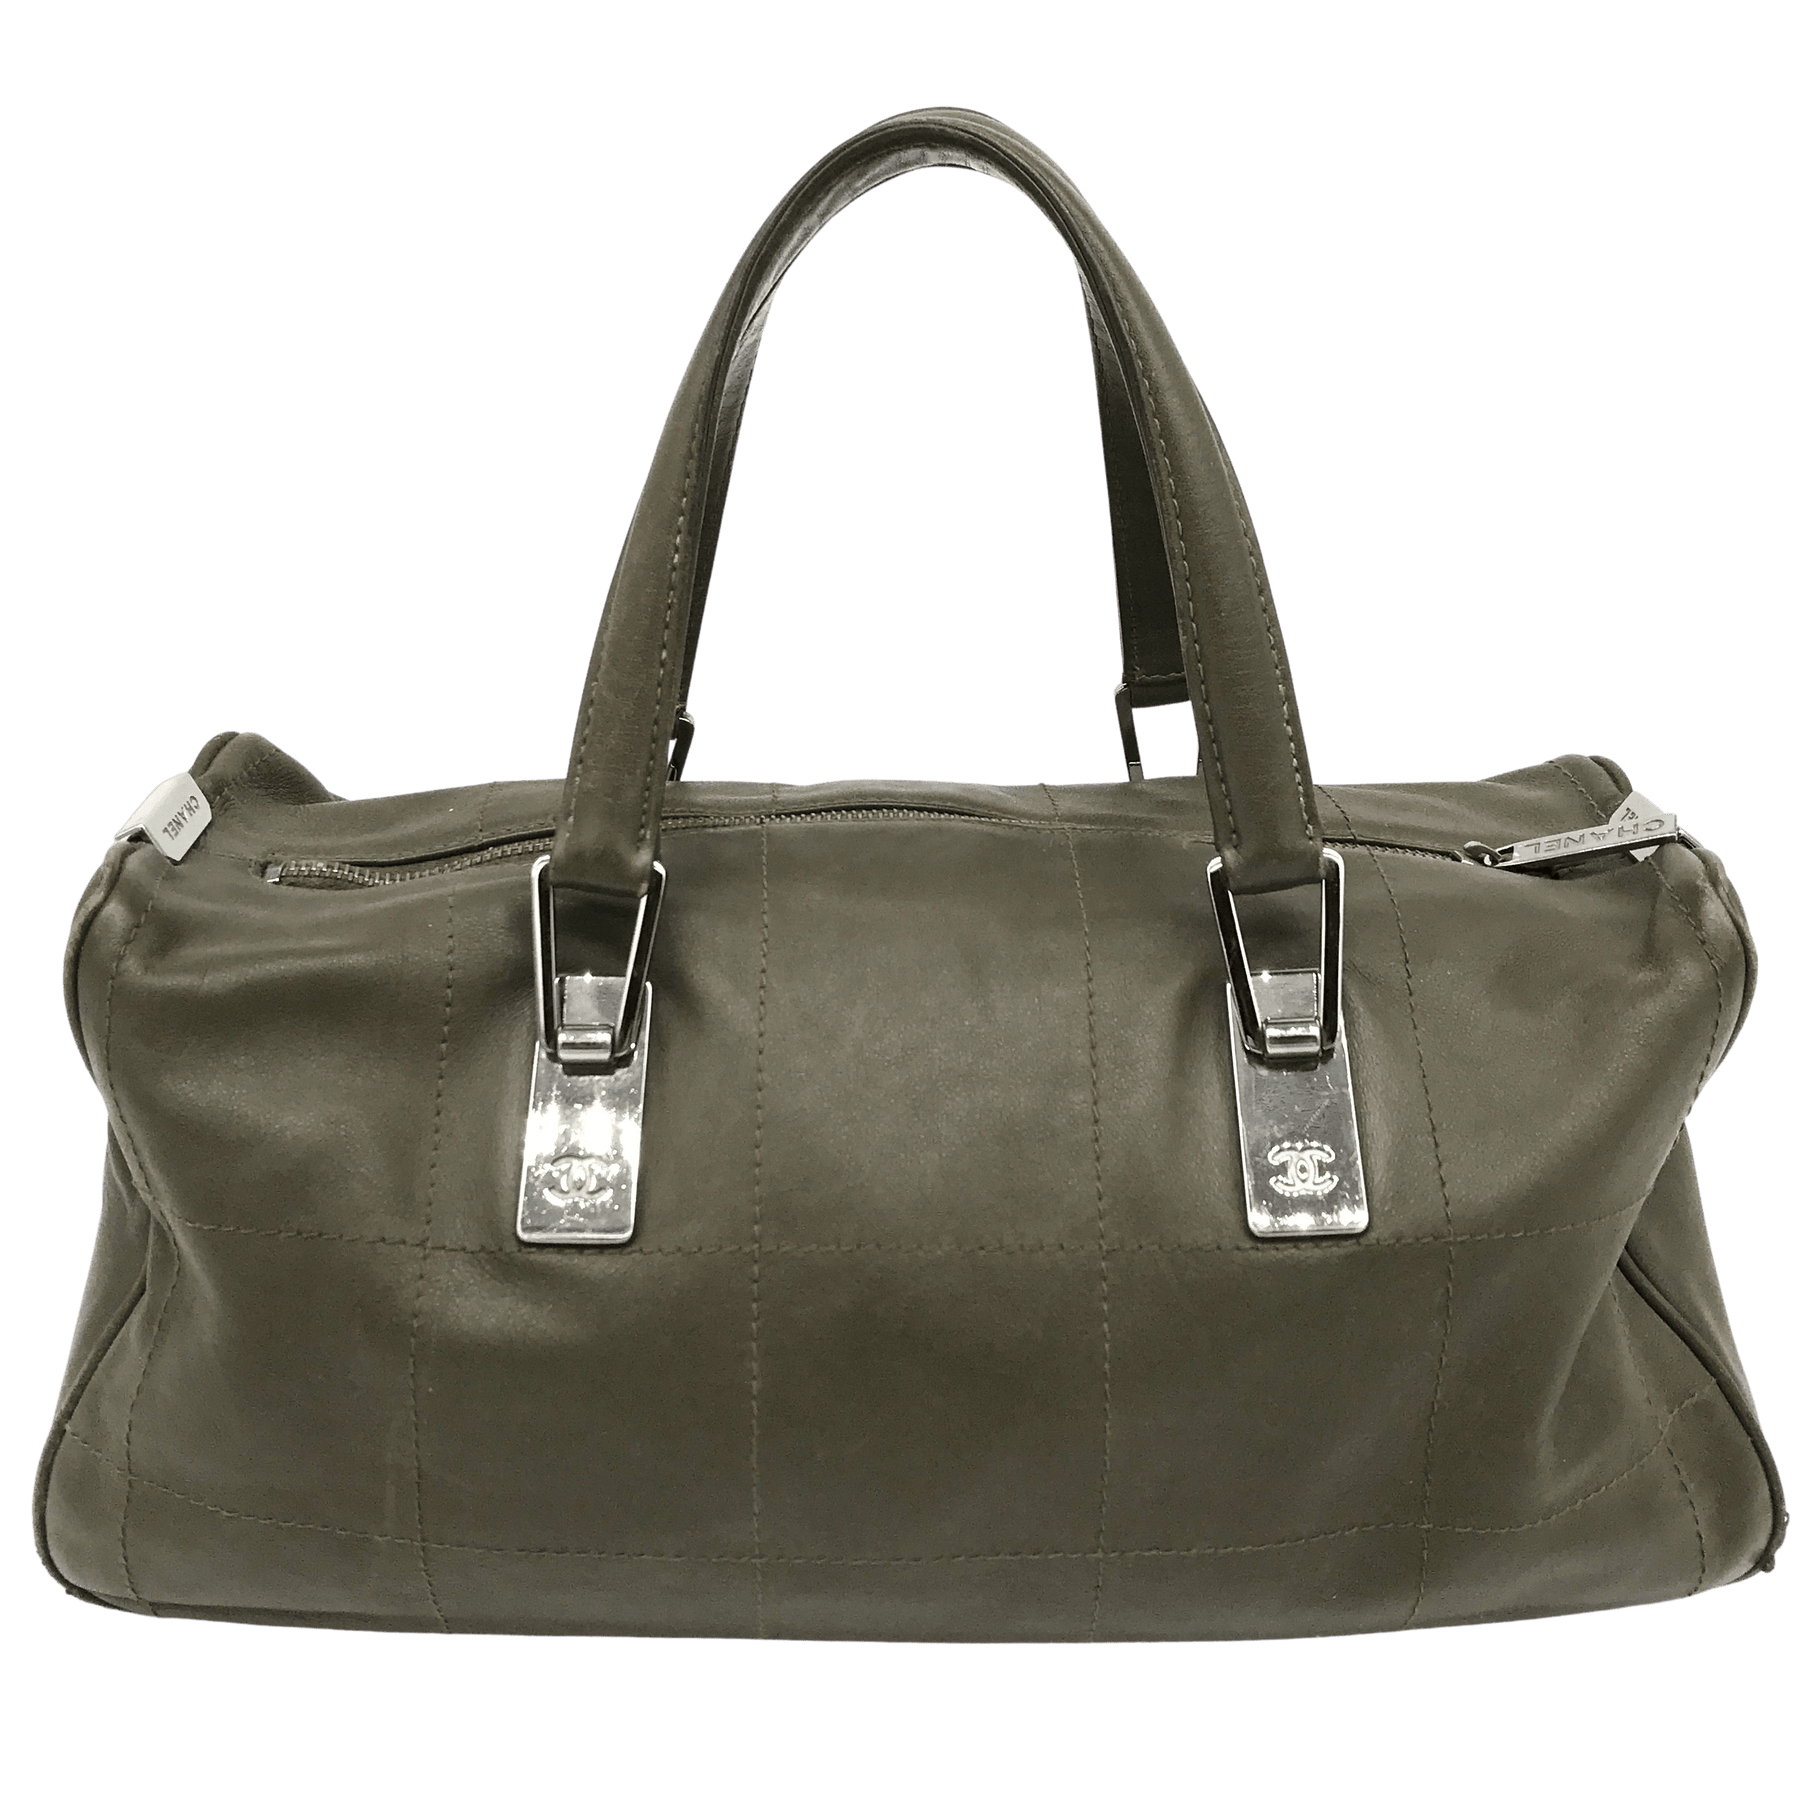 Chanel Vintage Green Quilted Leather Briefcase Shoulder Bag